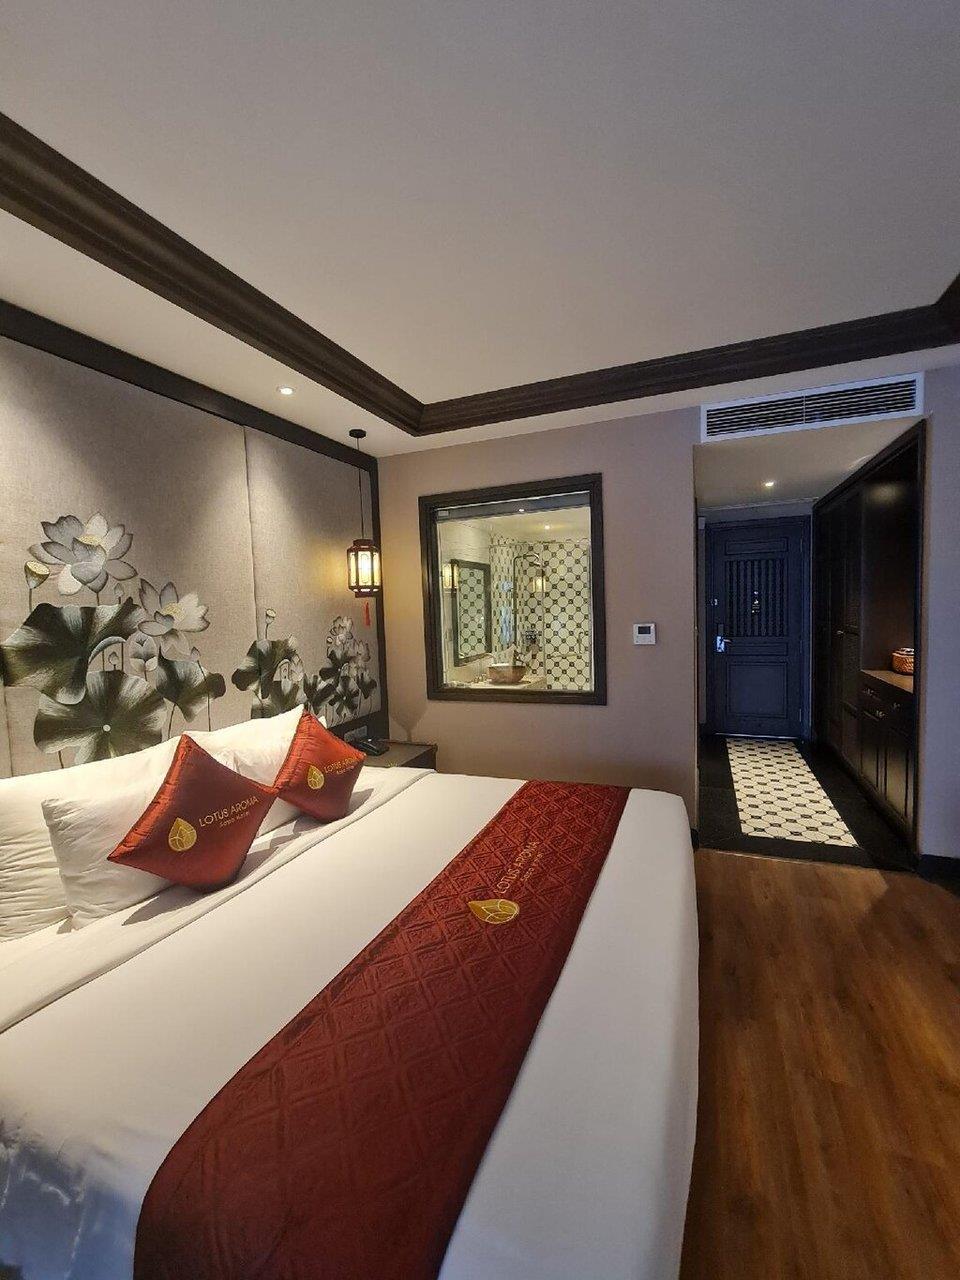 Deluxe giường đôi/2 giường đơn hướng thị trấn Sapa - Khách sạn Lotus Aroma Sapa